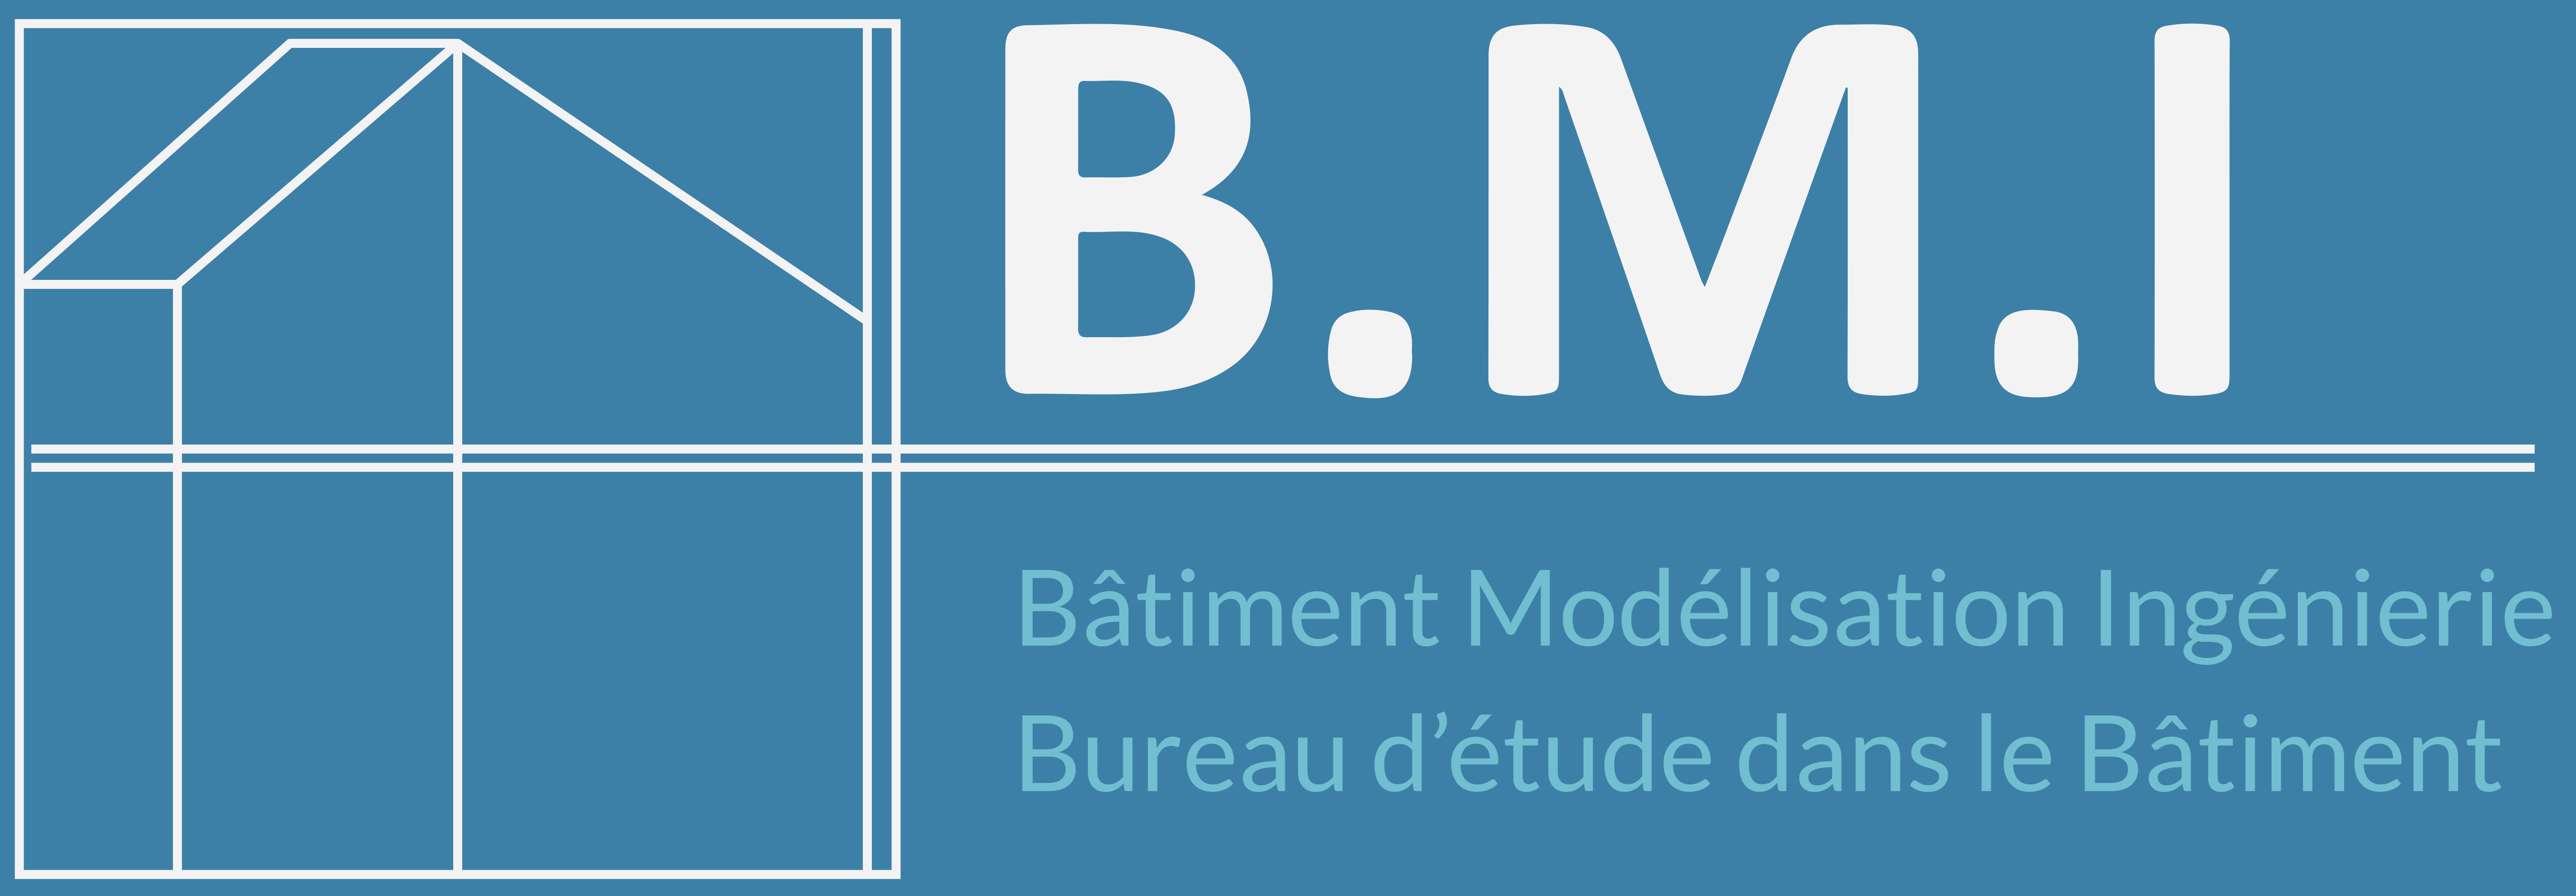 B.M.I - Bâtiment Modélisation Ingénierie : Bureau d’étude dans le bâtiment (Accueil)